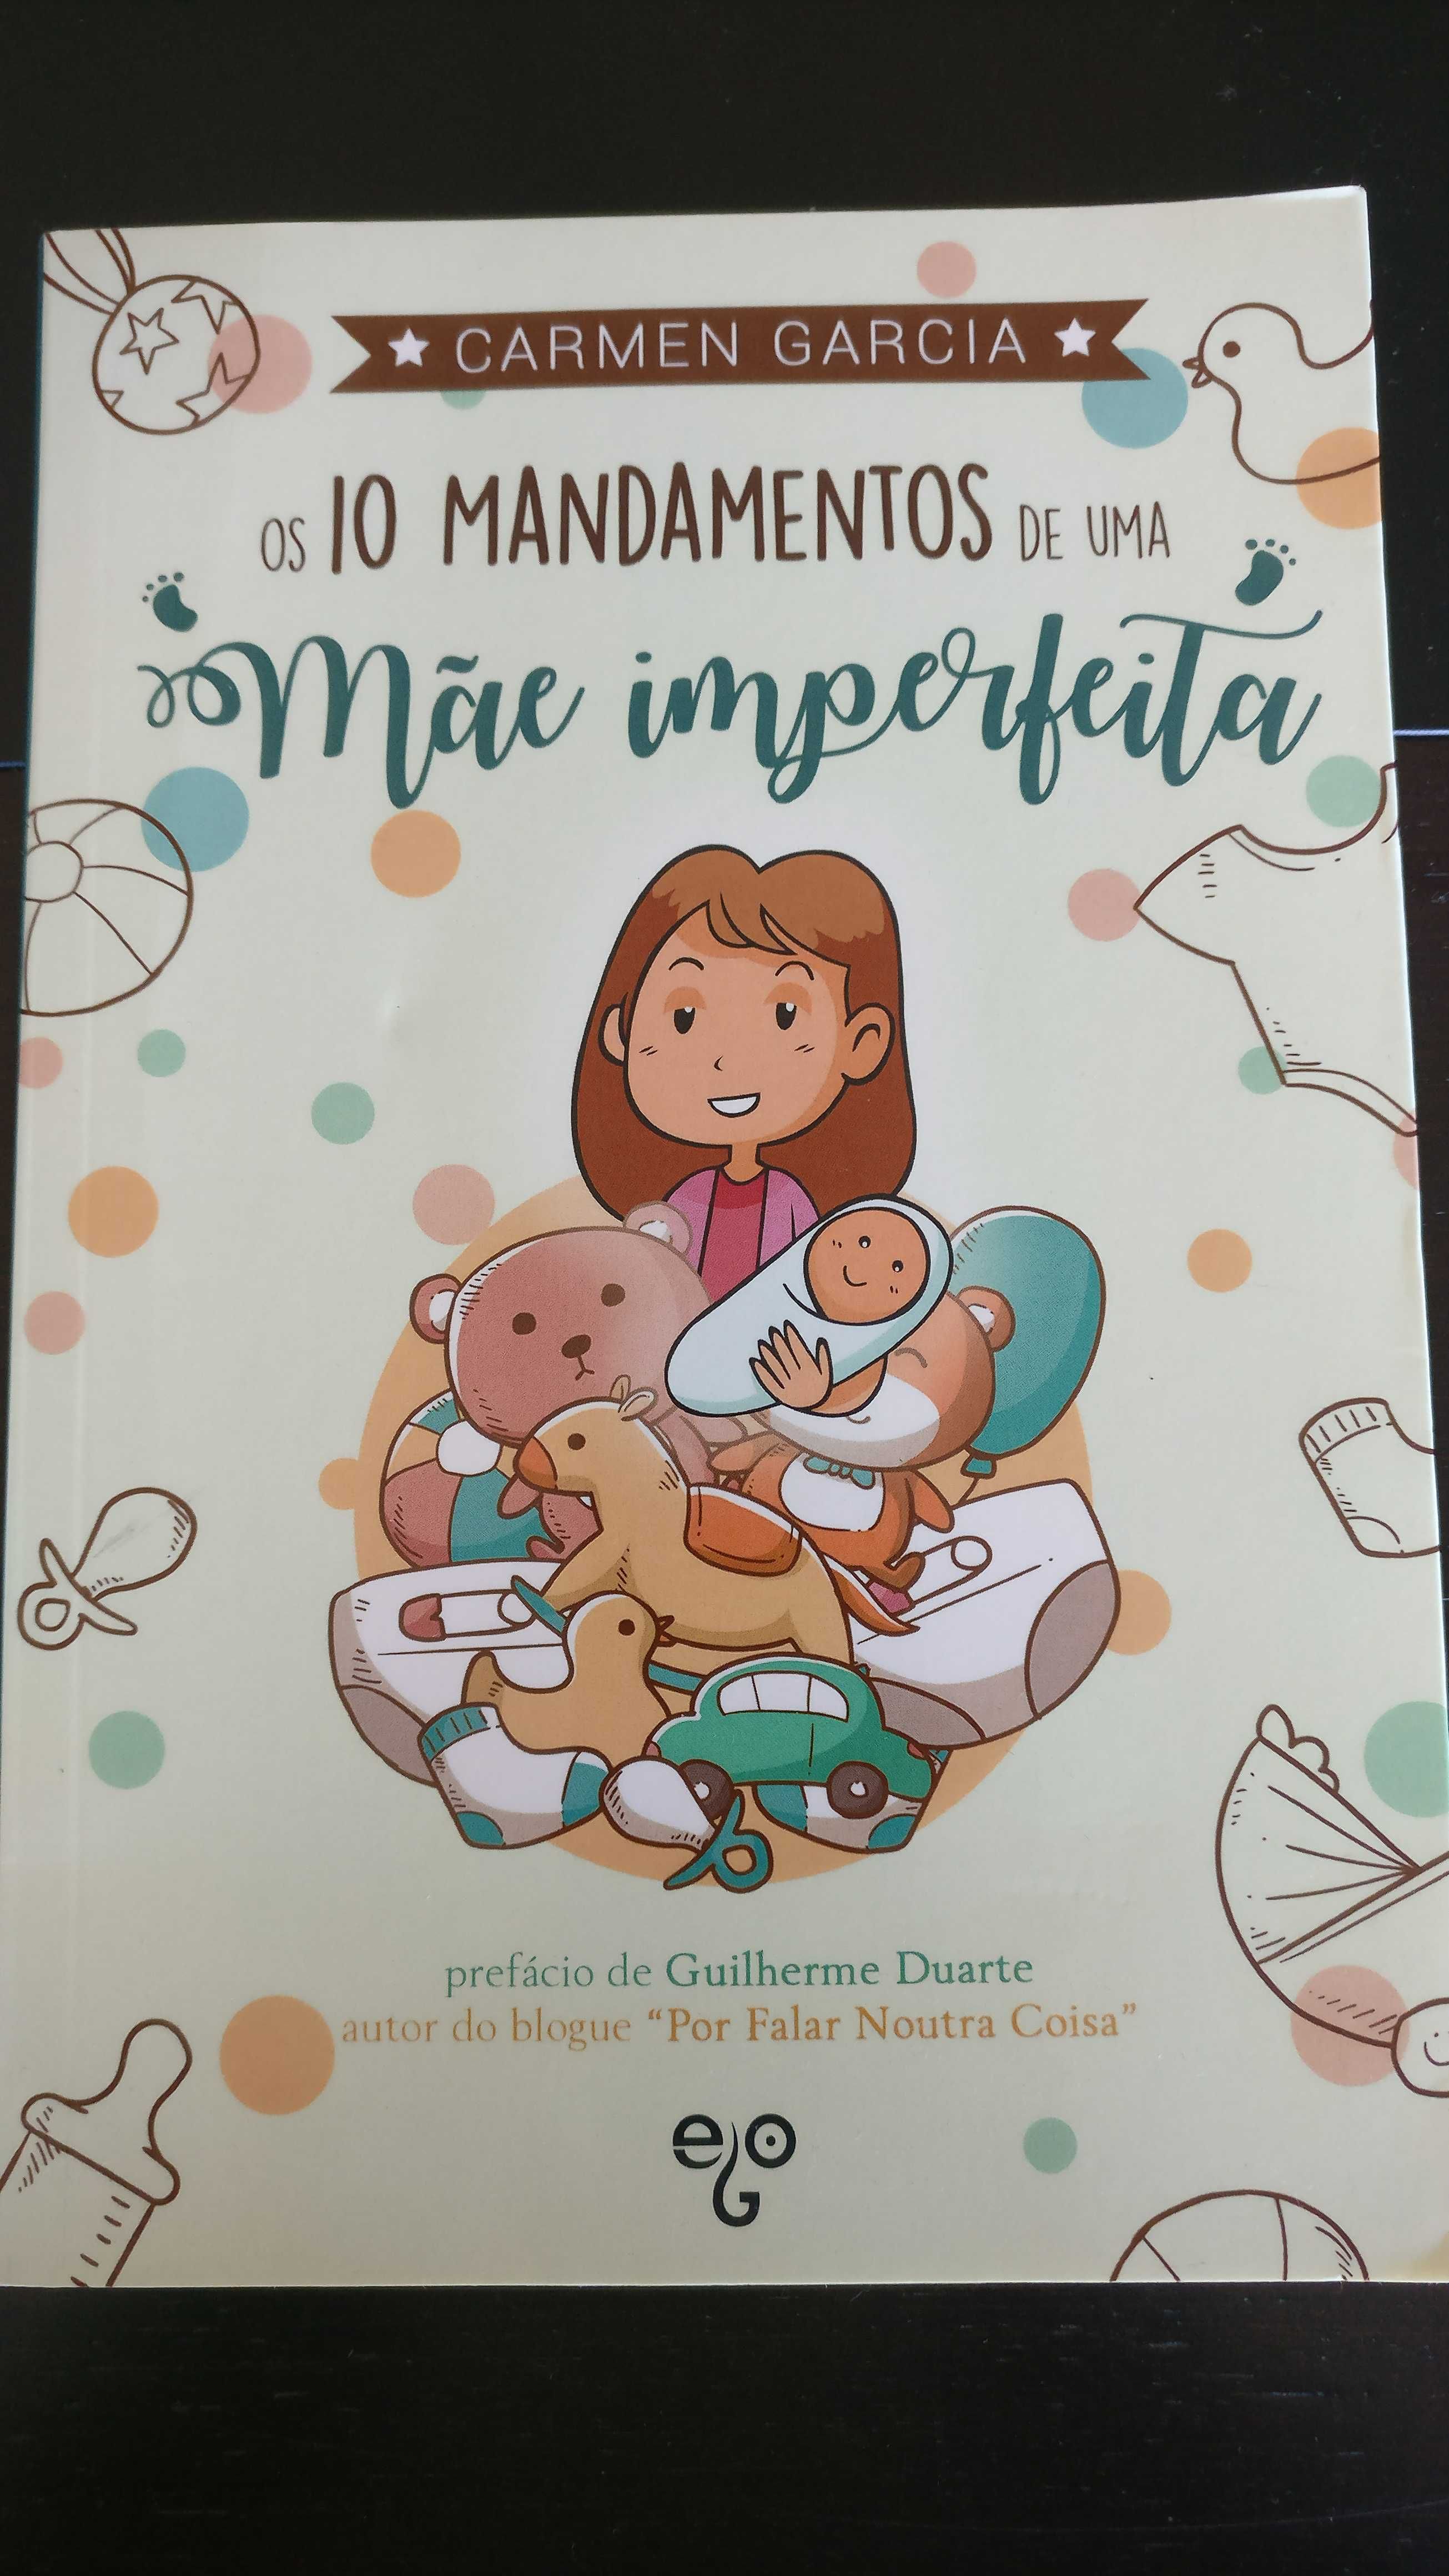 Livro "Os 10 mandamentos de uma mãe imperfeita"